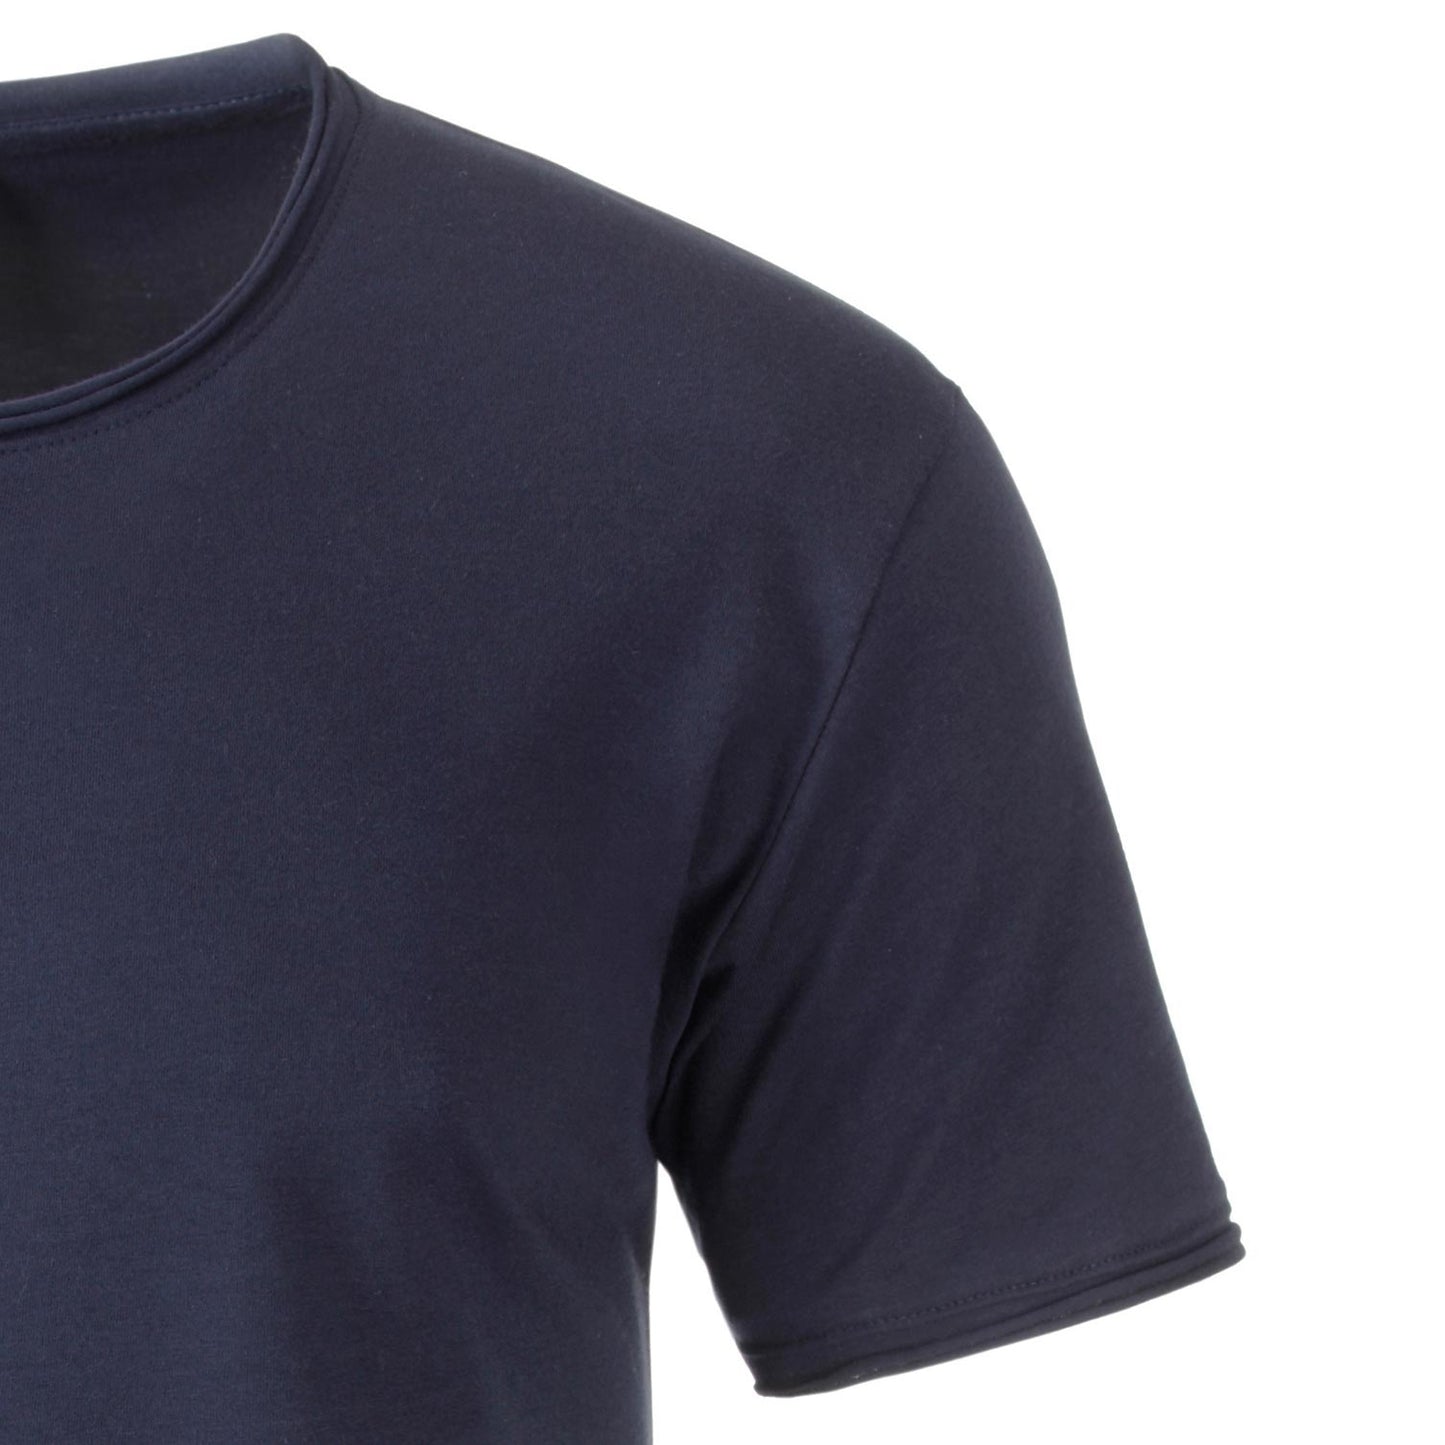 JAN 8002 ― Herren Bio-Baumwolle Rollsaum T-Shirt - Navy Blau